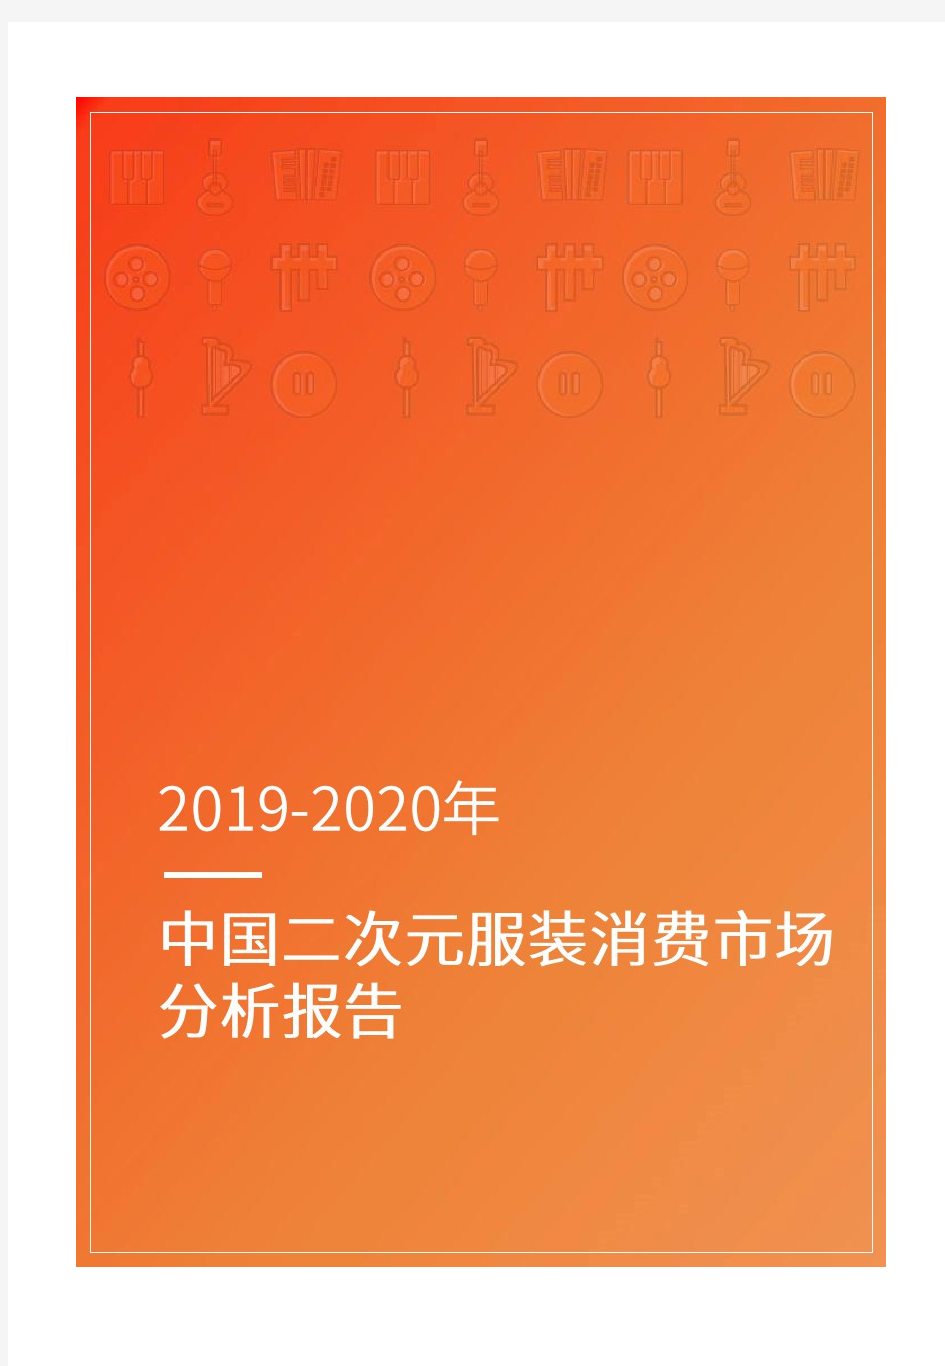 2019-2020中国二次元服装消费市场分析报告